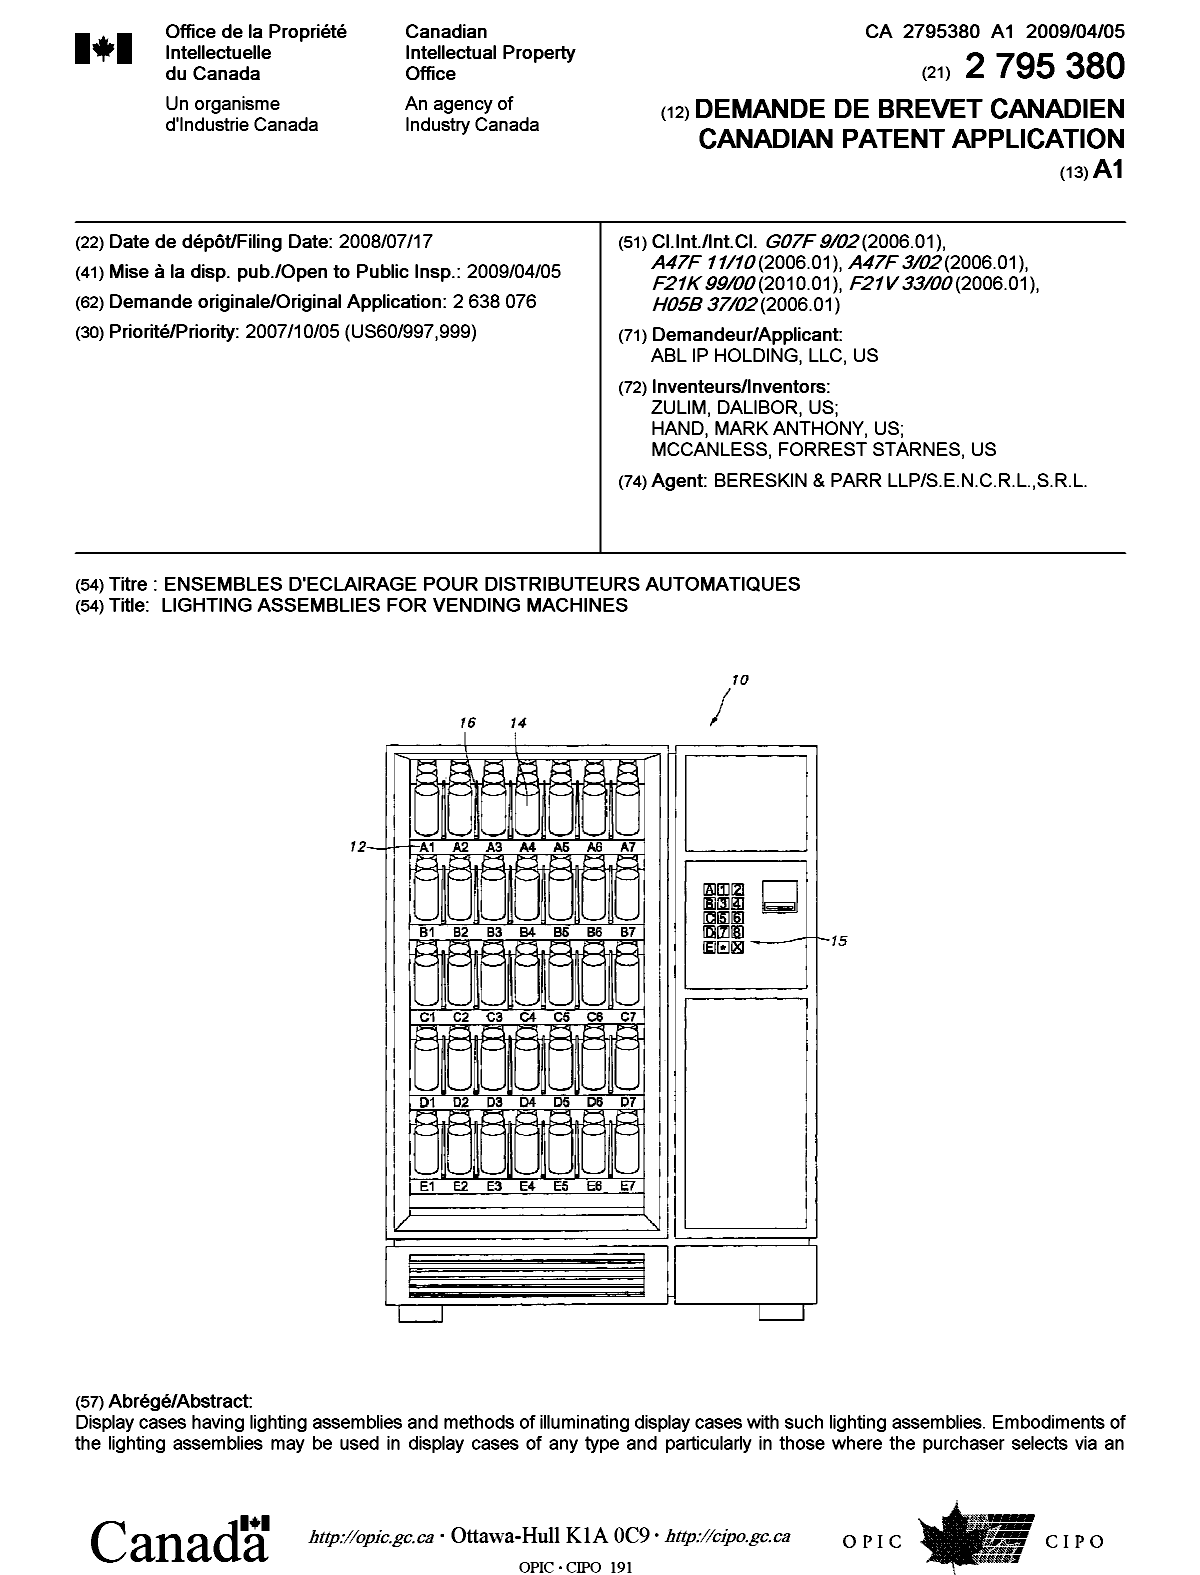 Document de brevet canadien 2795380. Page couverture 20130121. Image 1 de 2